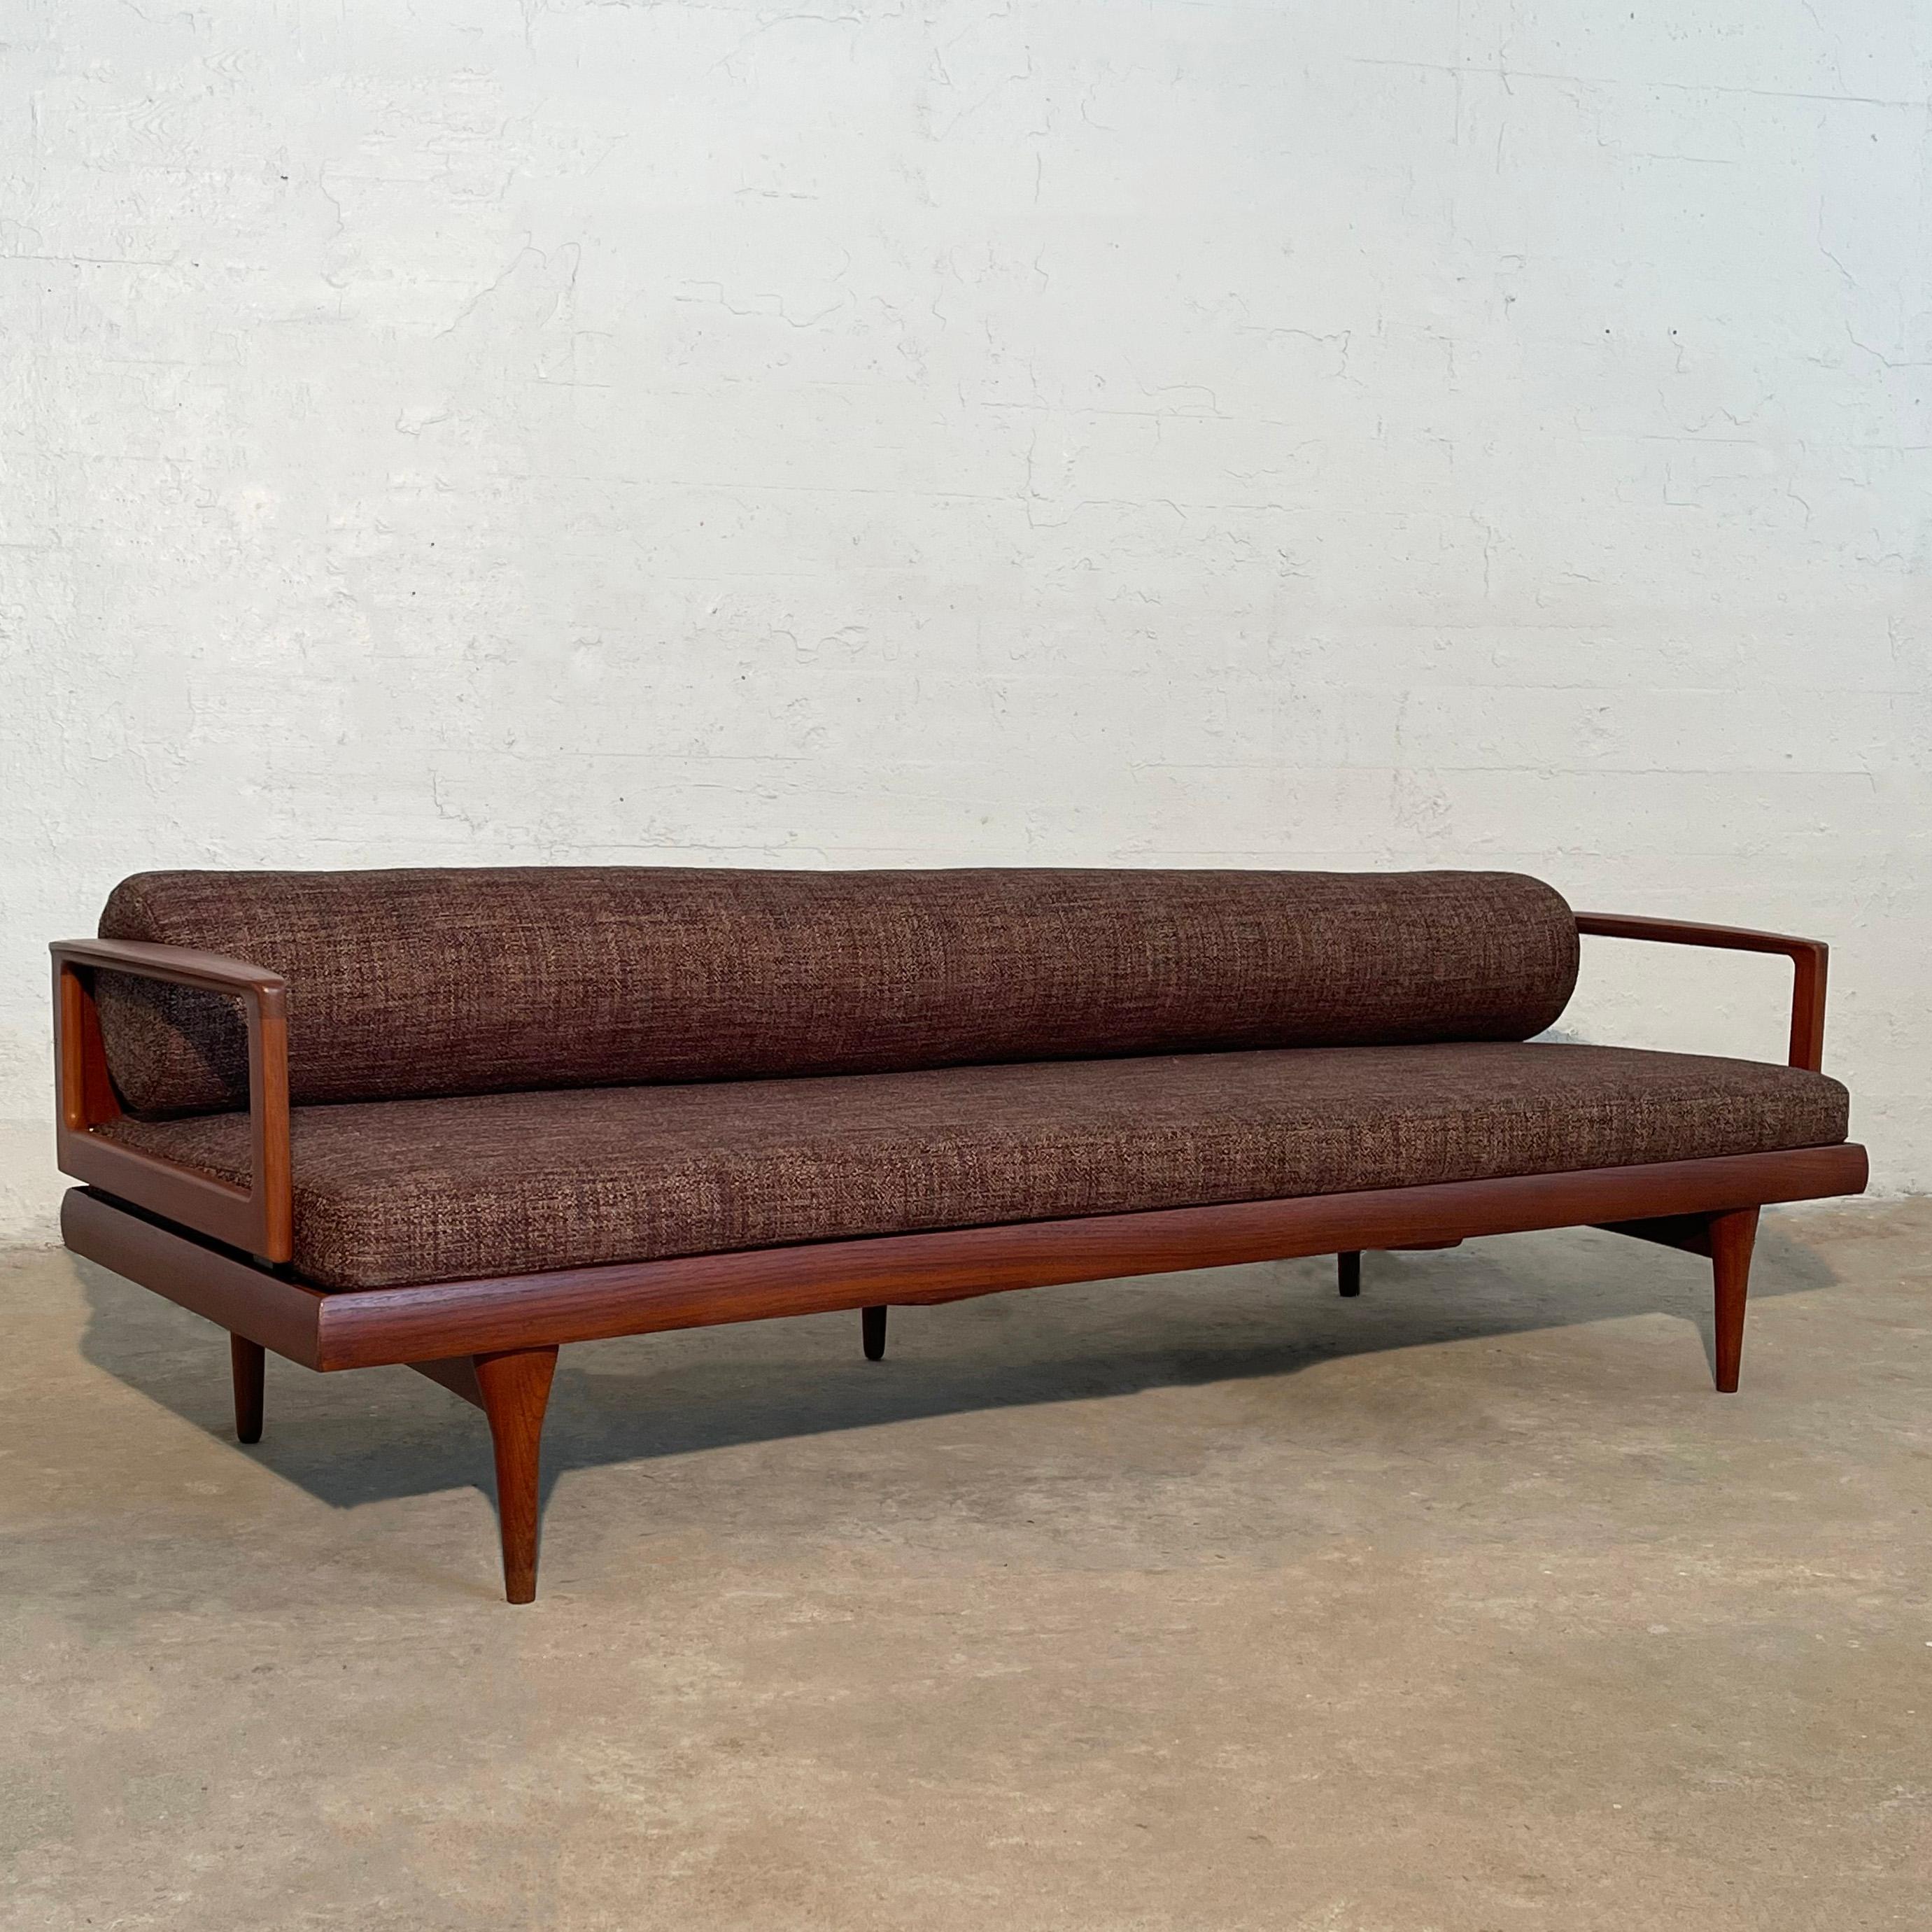 Elegantes, niedriges, skandinavisch-modernes Sofa mit Teakholzrahmen und stromlinienförmiger, schokoladenbrauner Tweed-Polsterung mit gerolltem Rückenkissen. Der Rahmen ist von vorne und von den Seiten her minimal, hat aber eine fantastische